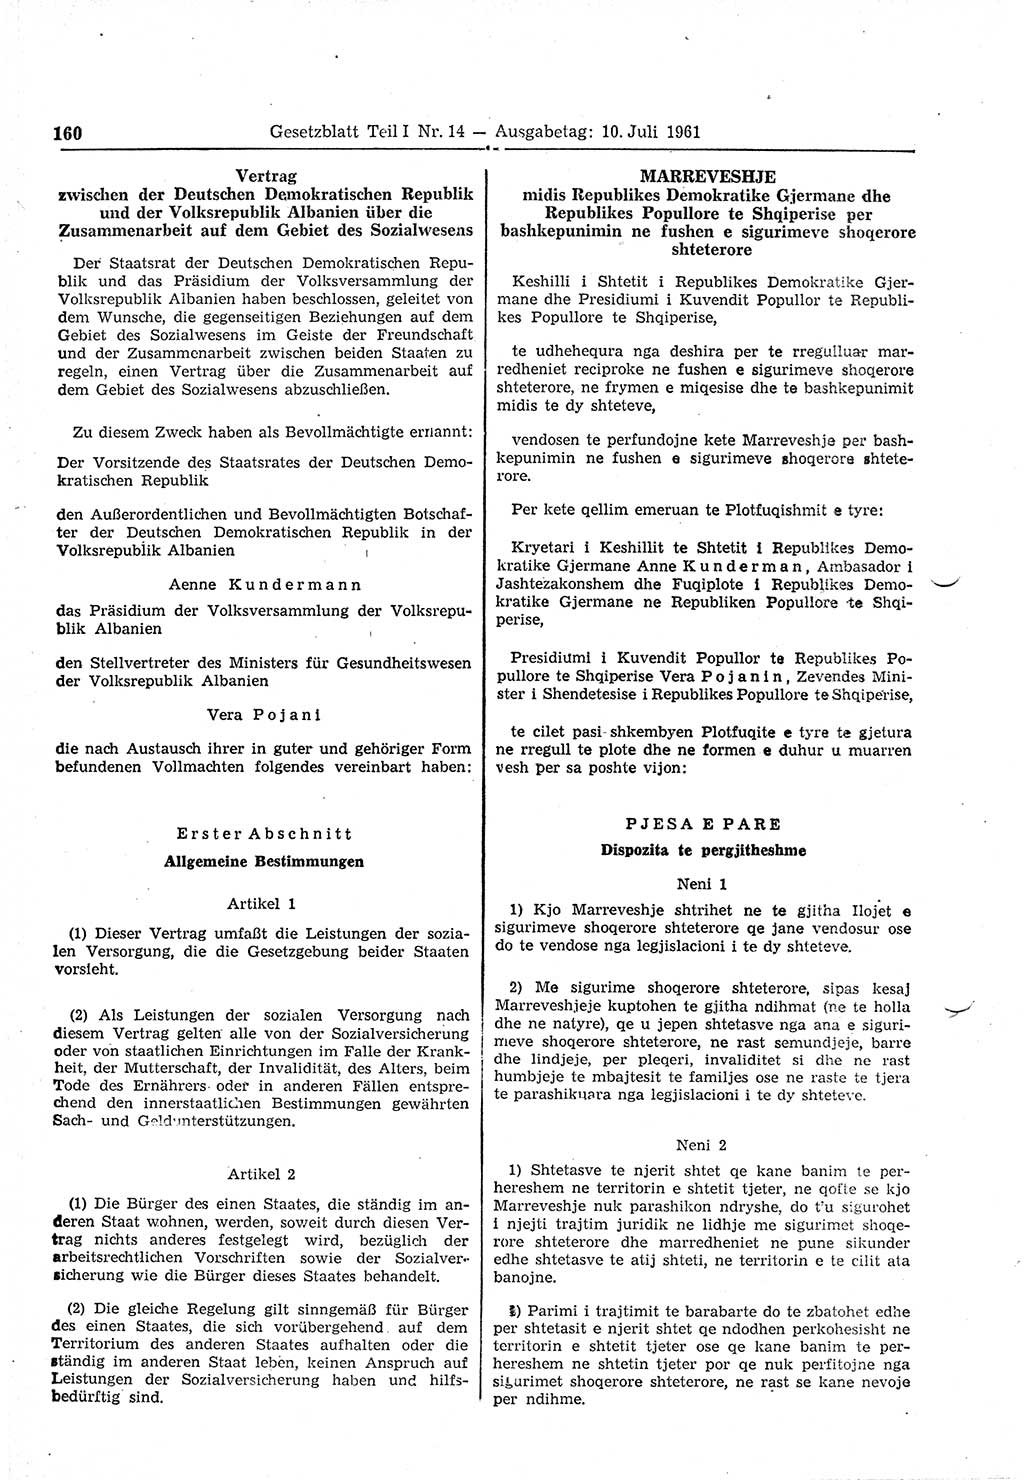 Gesetzblatt (GBl.) der Deutschen Demokratischen Republik (DDR) Teil Ⅰ 1961, Seite 160 (GBl. DDR Ⅰ 1961, S. 160)